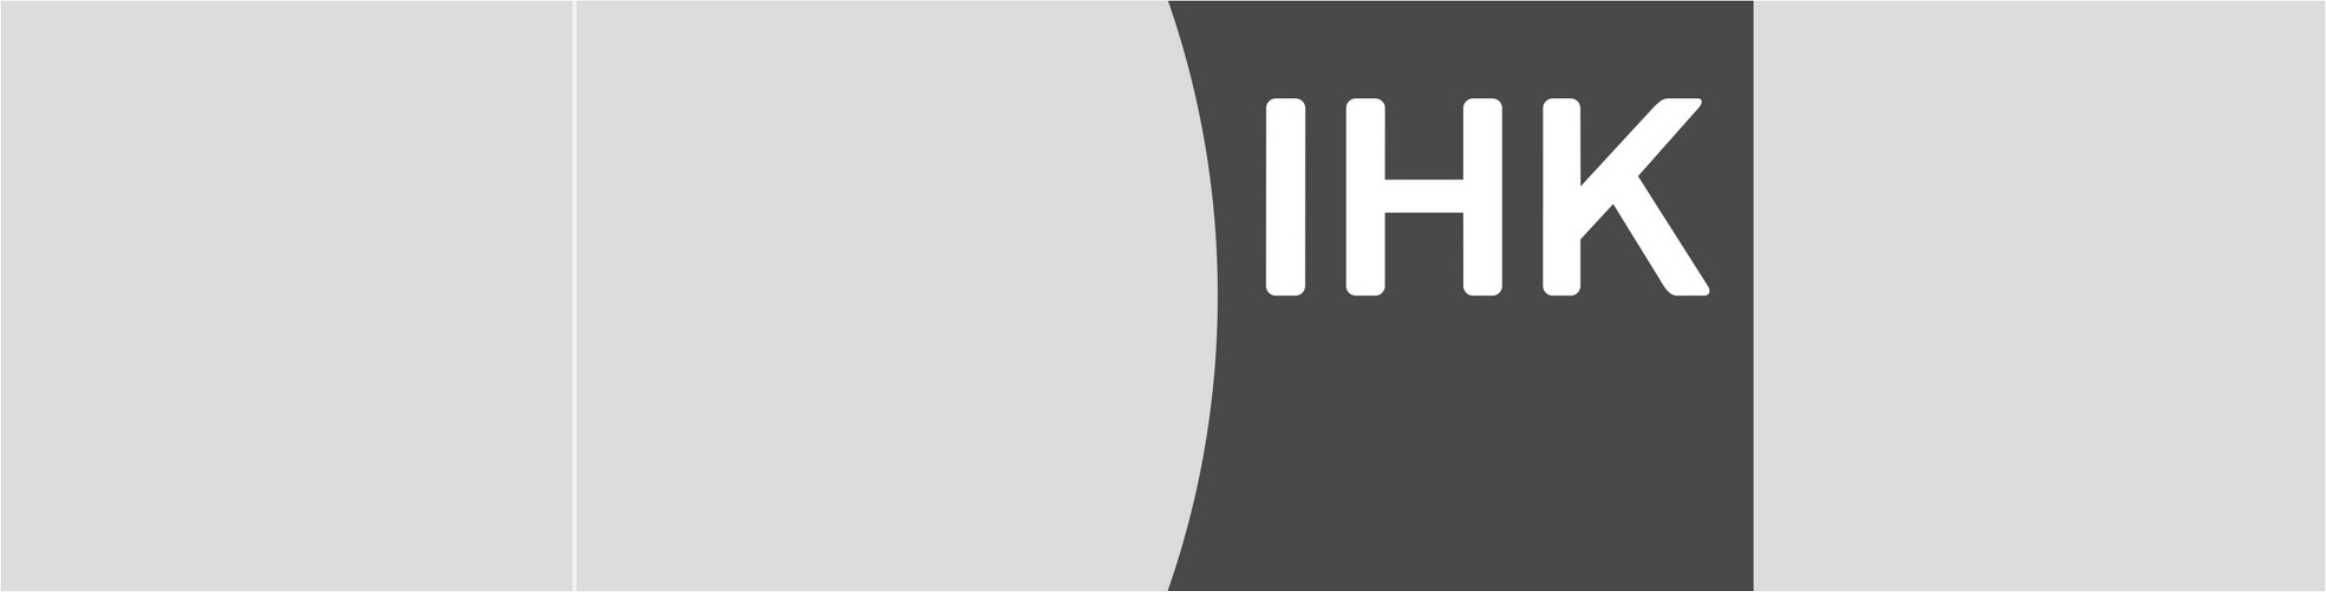 IHK Logo sw